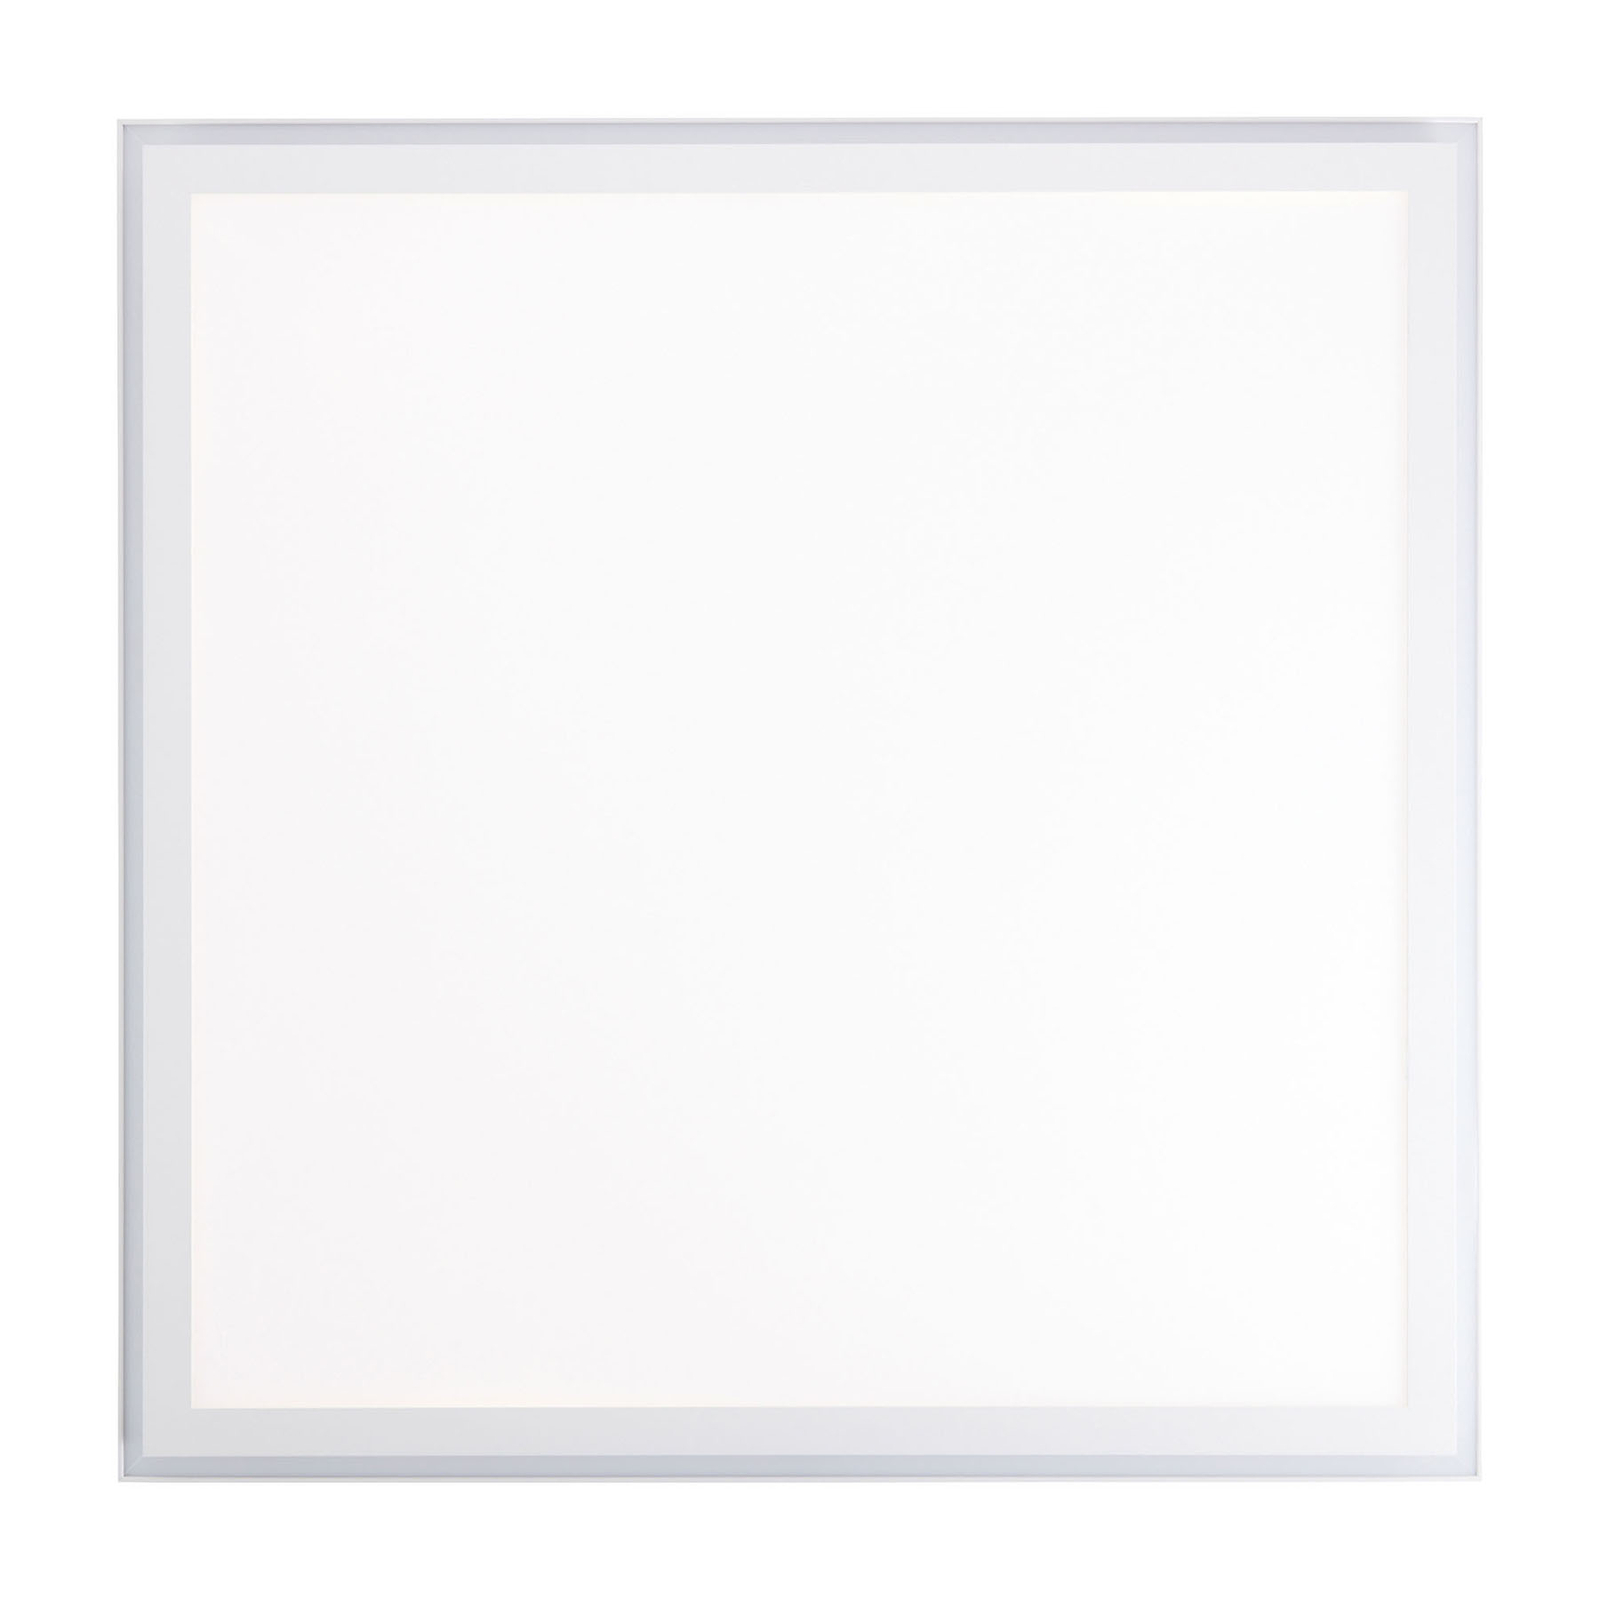 AEG Loren panneau LED CCT dimmable blanc 60x60cm